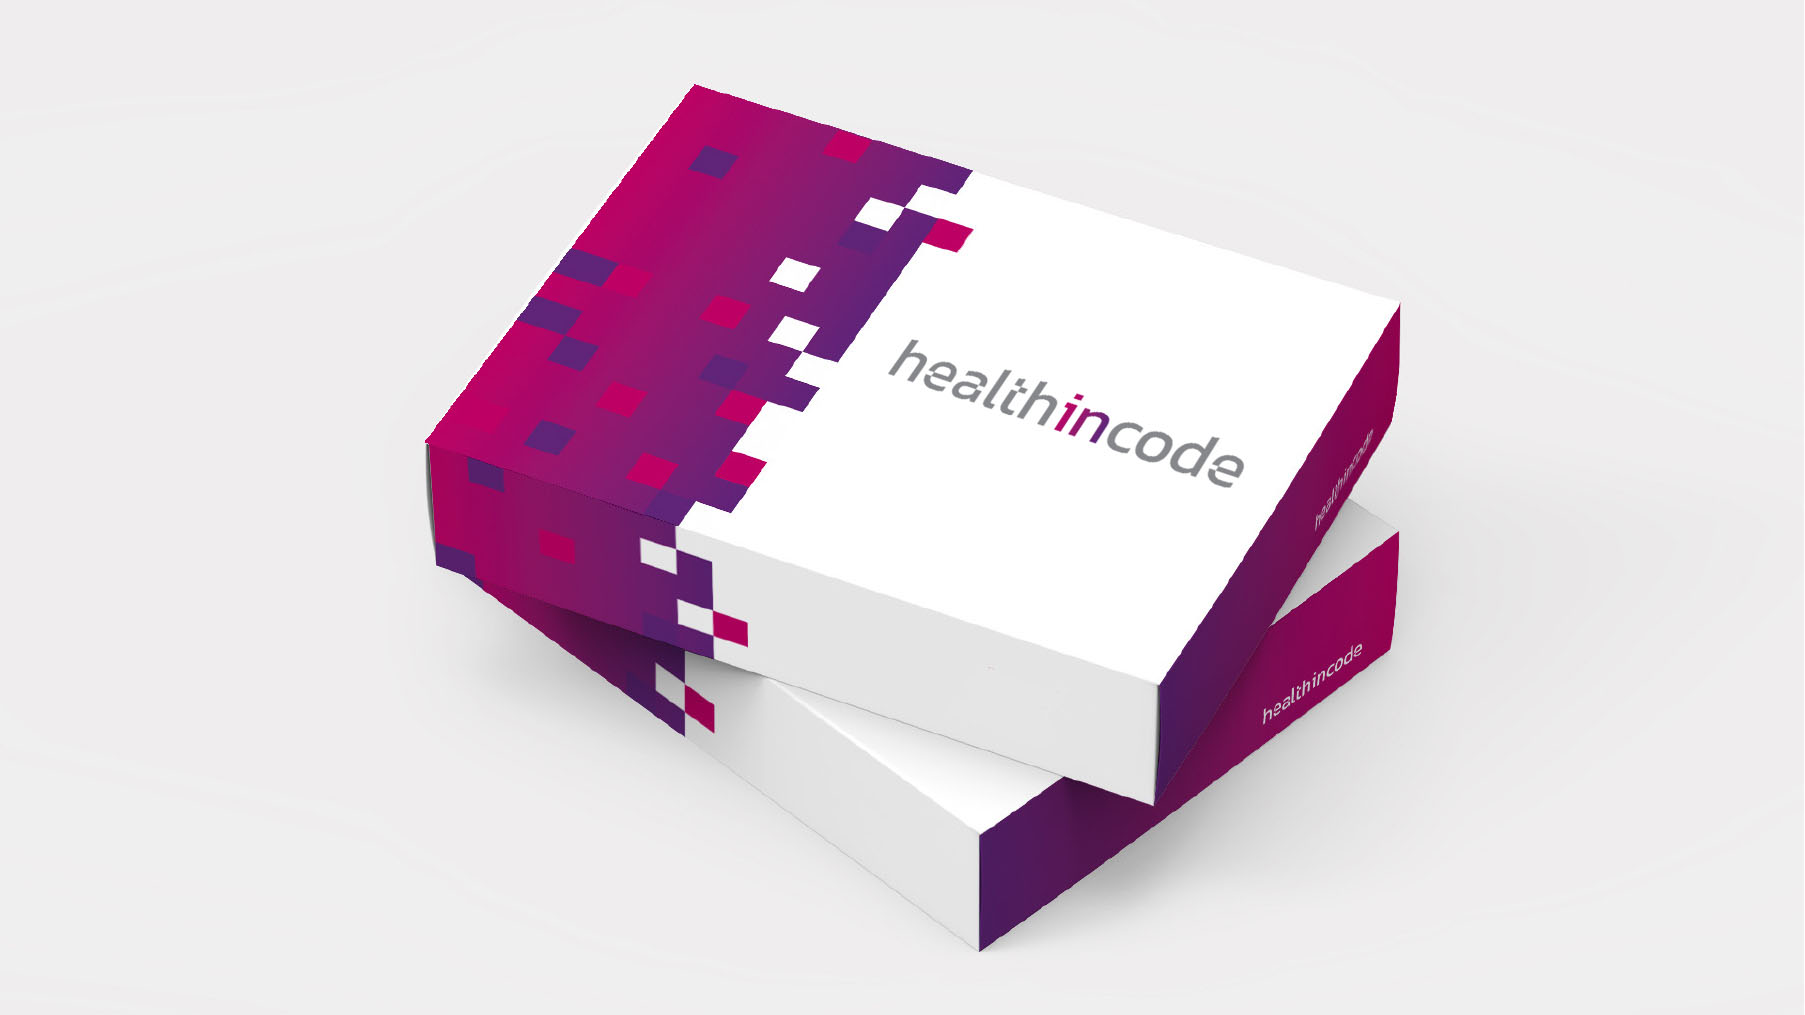 Kit Health in Code